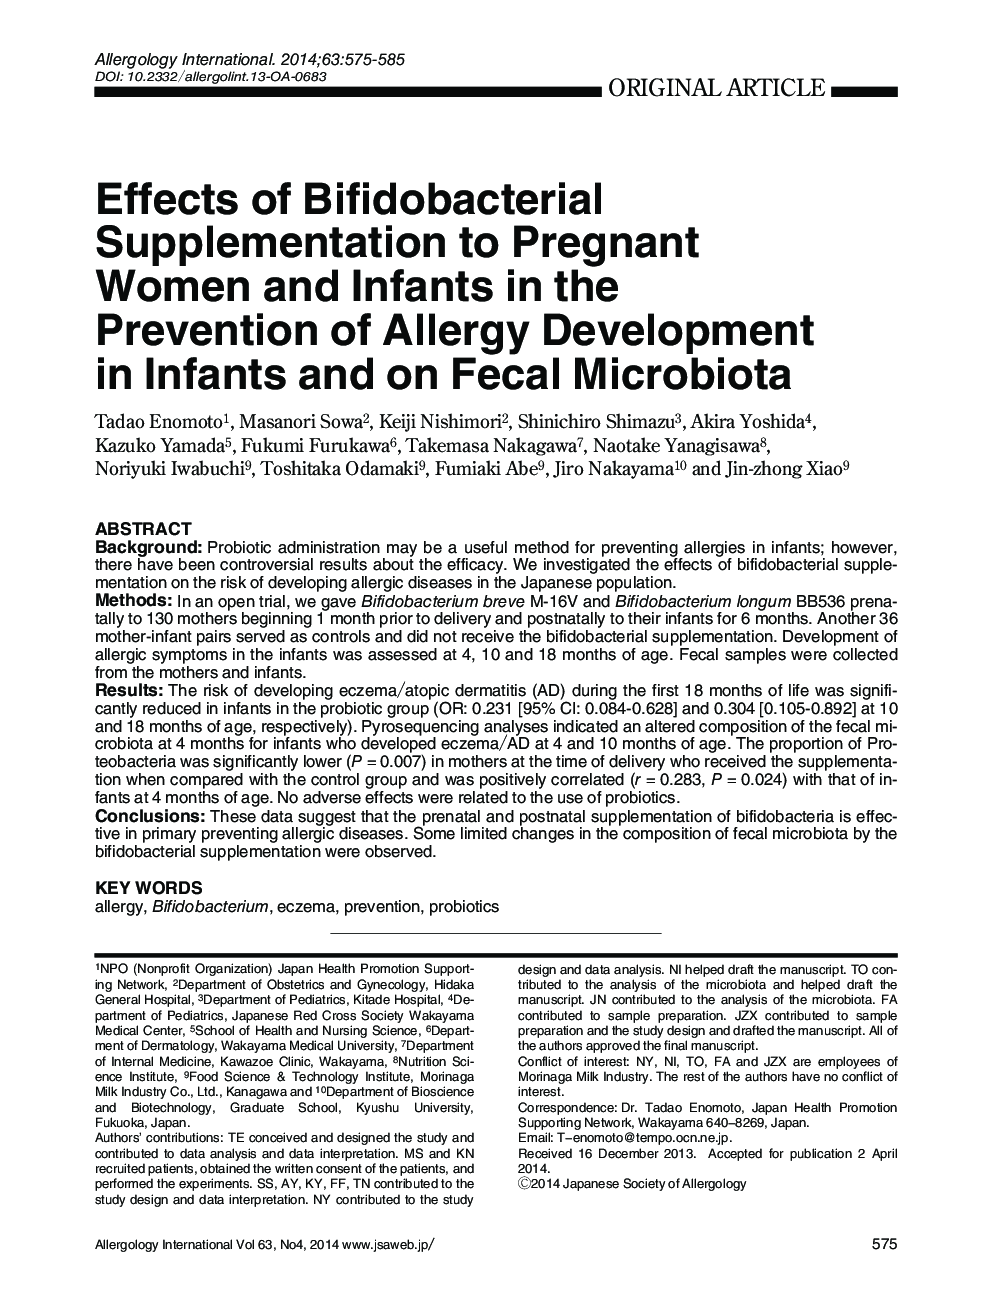 اثرات مکمل بیفیدوباکتریایی بر زنان باردار و نوزادان در پیشگیری از آلرژی در نوزادان و میکروبیوتیک مدفوع 